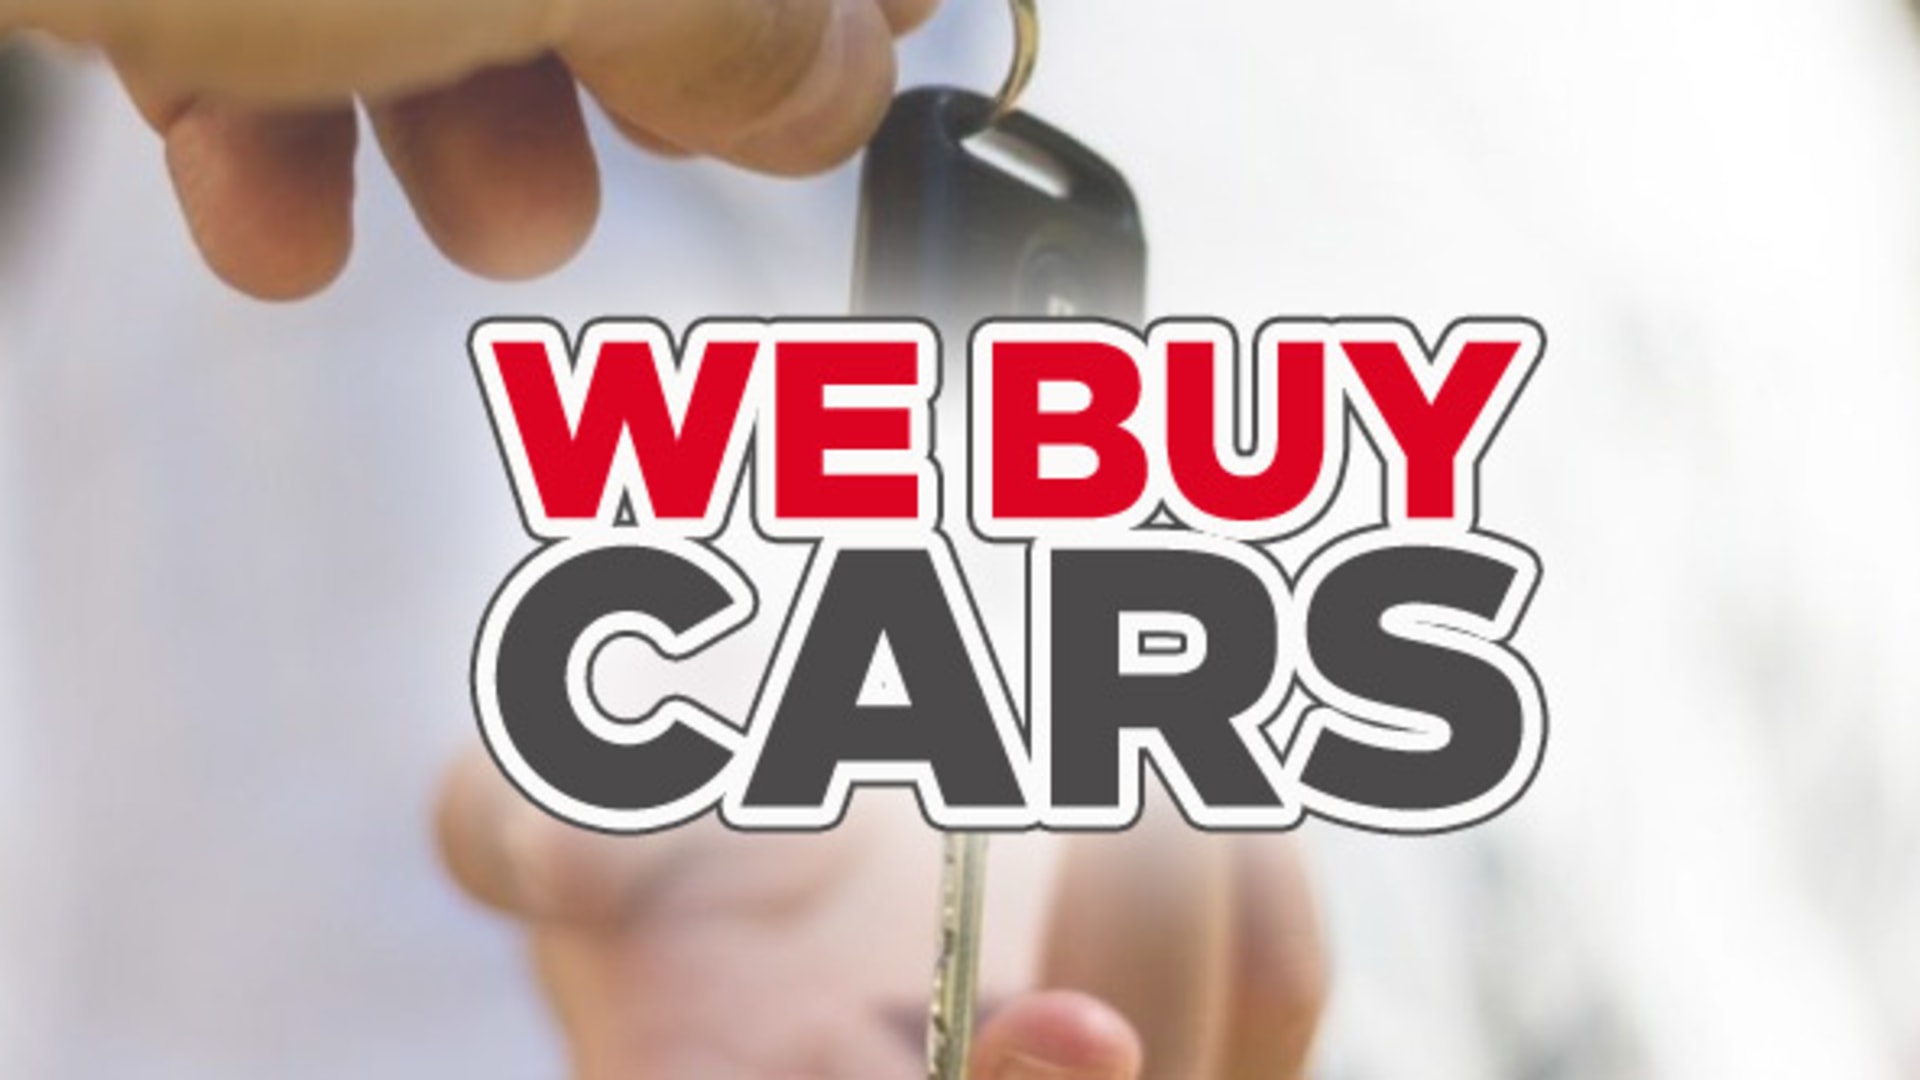 We Buy Cars